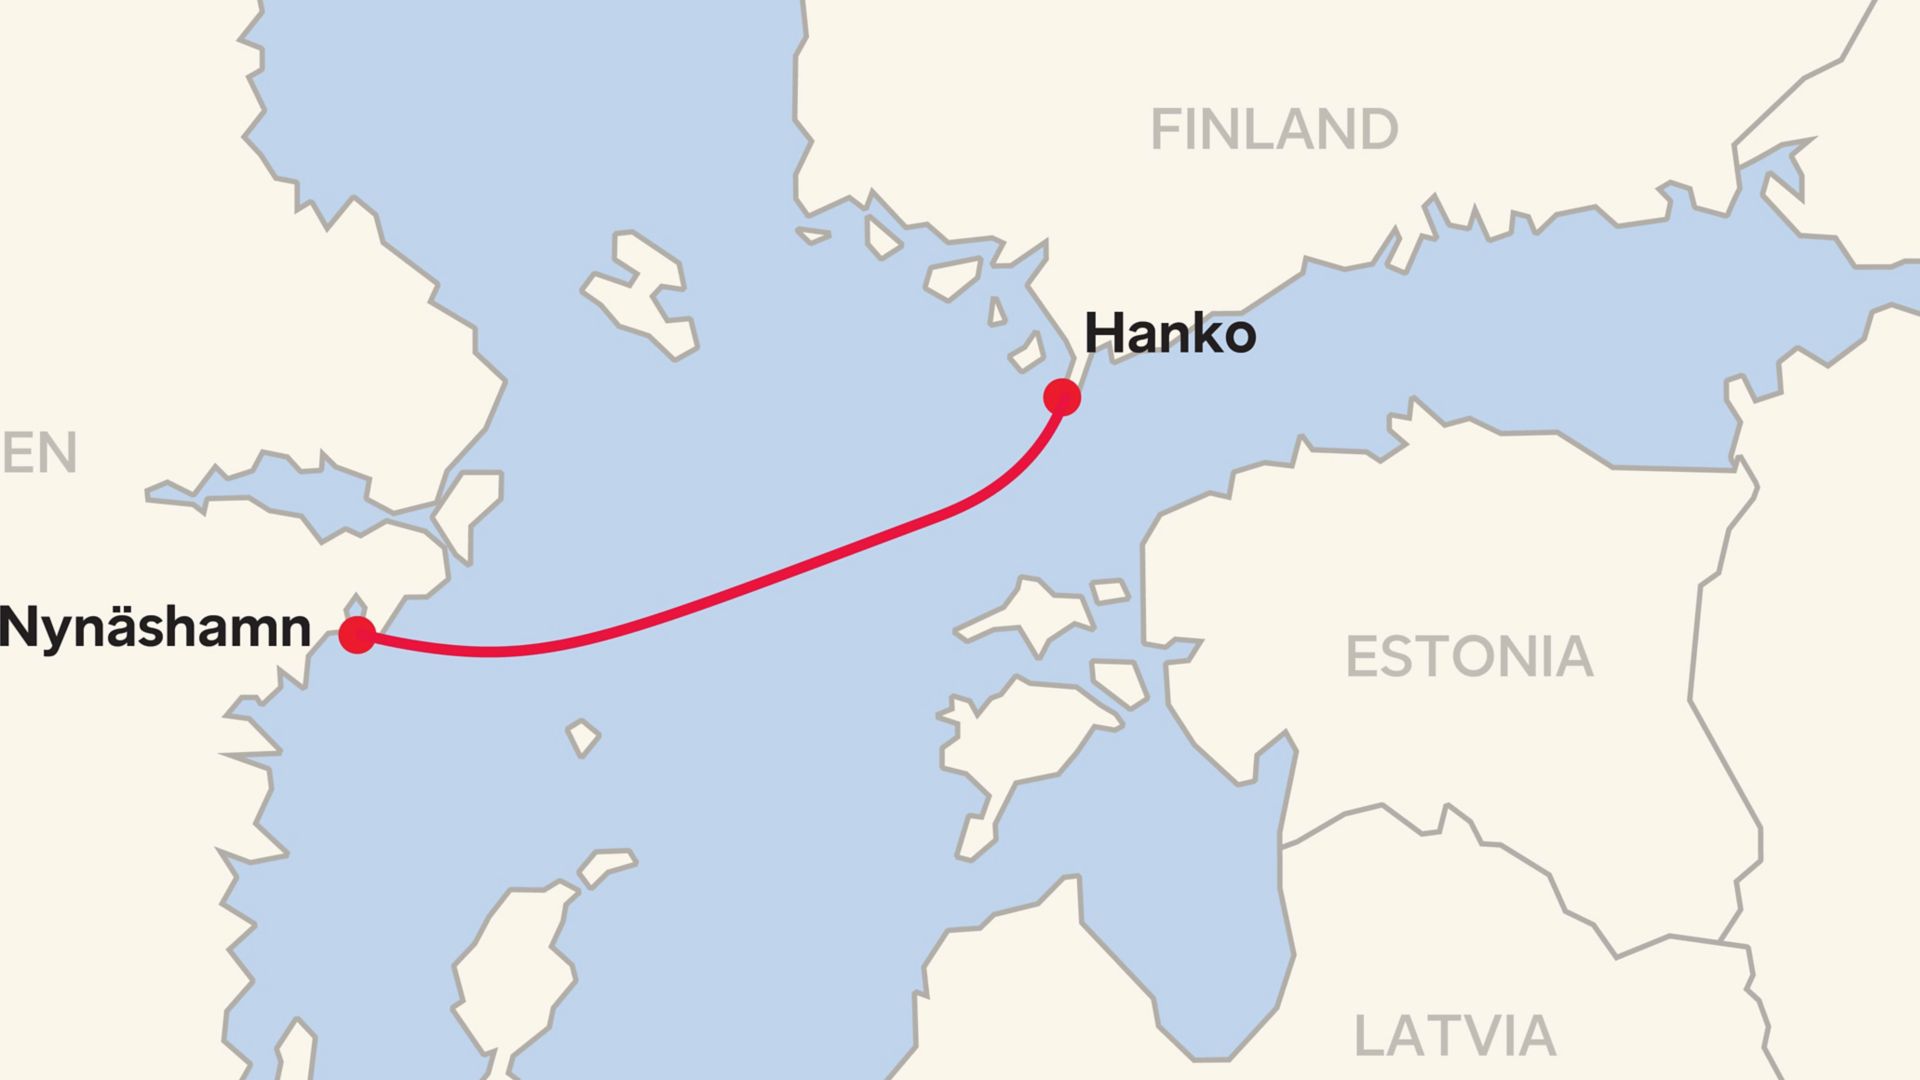 Montrer l’itinéraire en ferry entre Nynashamn et Hanko